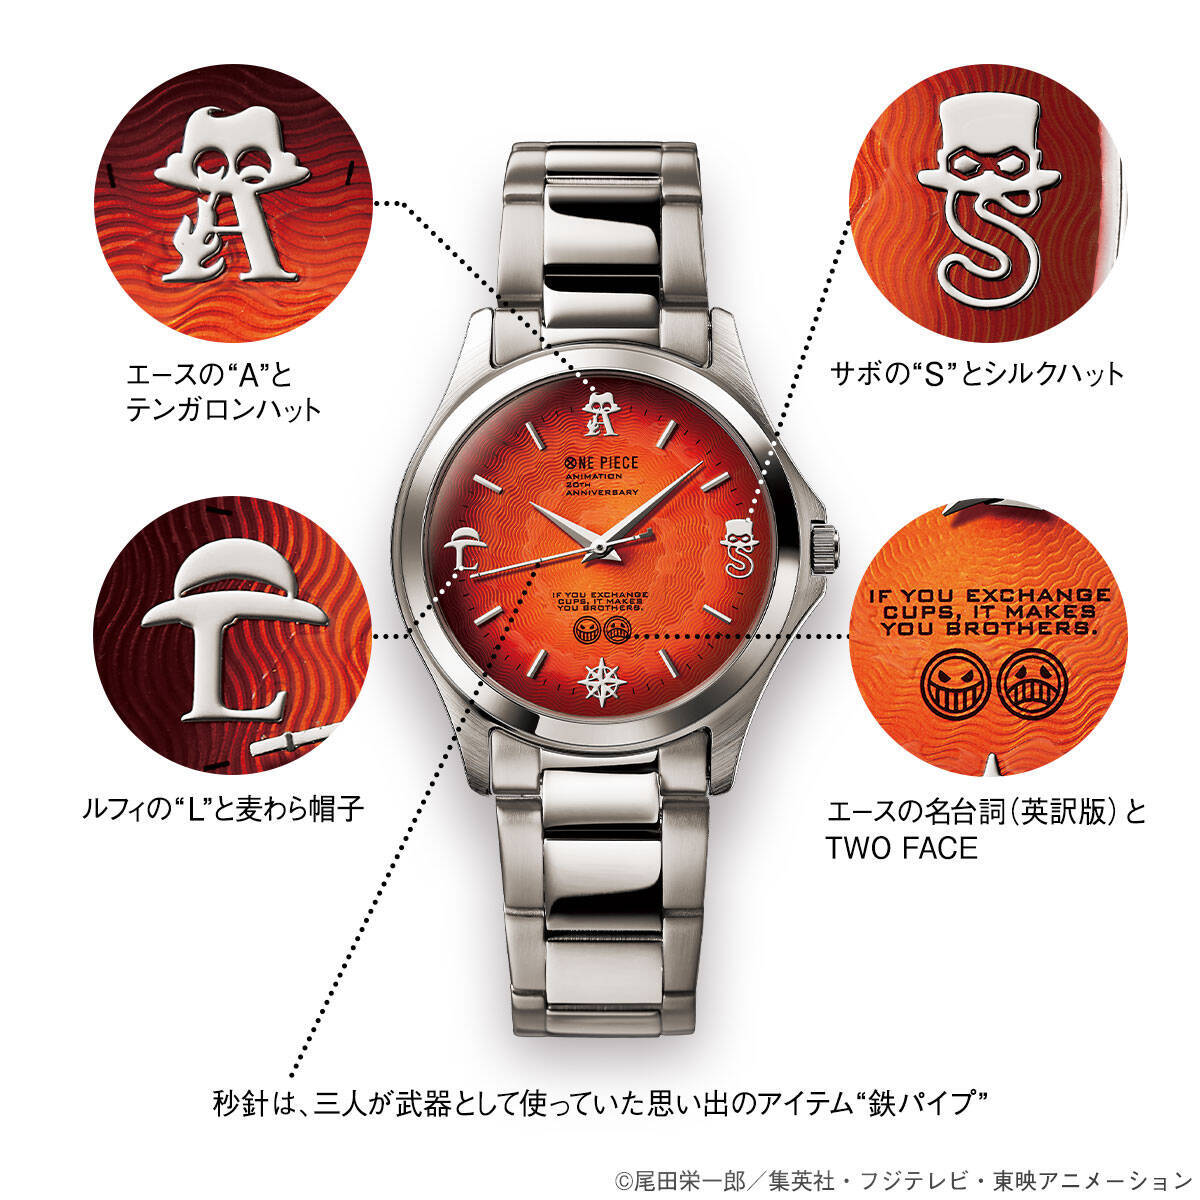 受け継がれる炎の意志 One Piece よりエース サボ ルフィ三兄弟の絆をイメージした腕時計が登場 年3月23日 エキサイトニュース